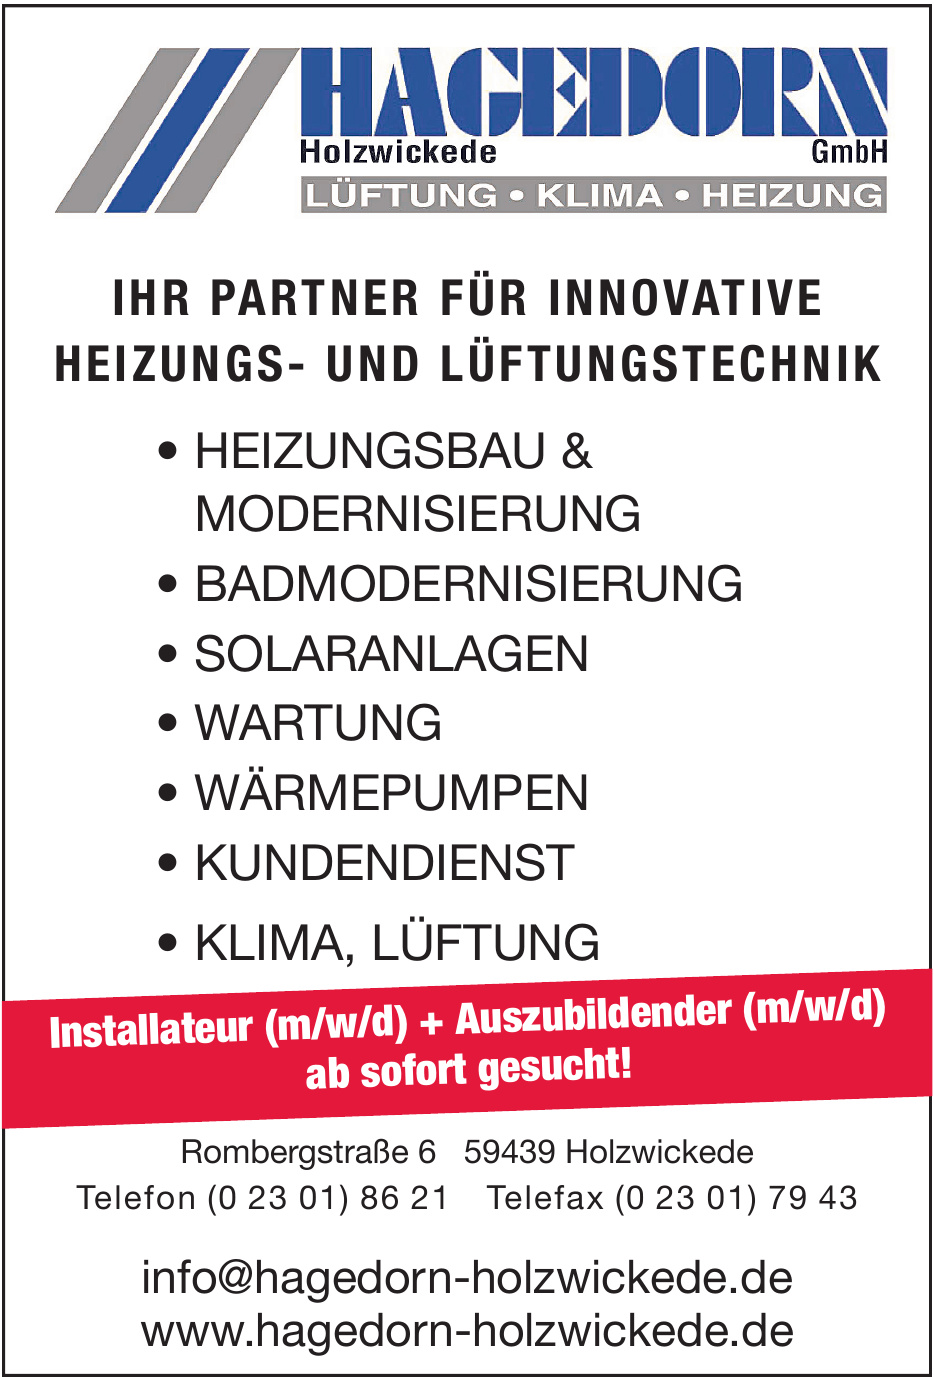 Hagedorn Holzwickede GmbH